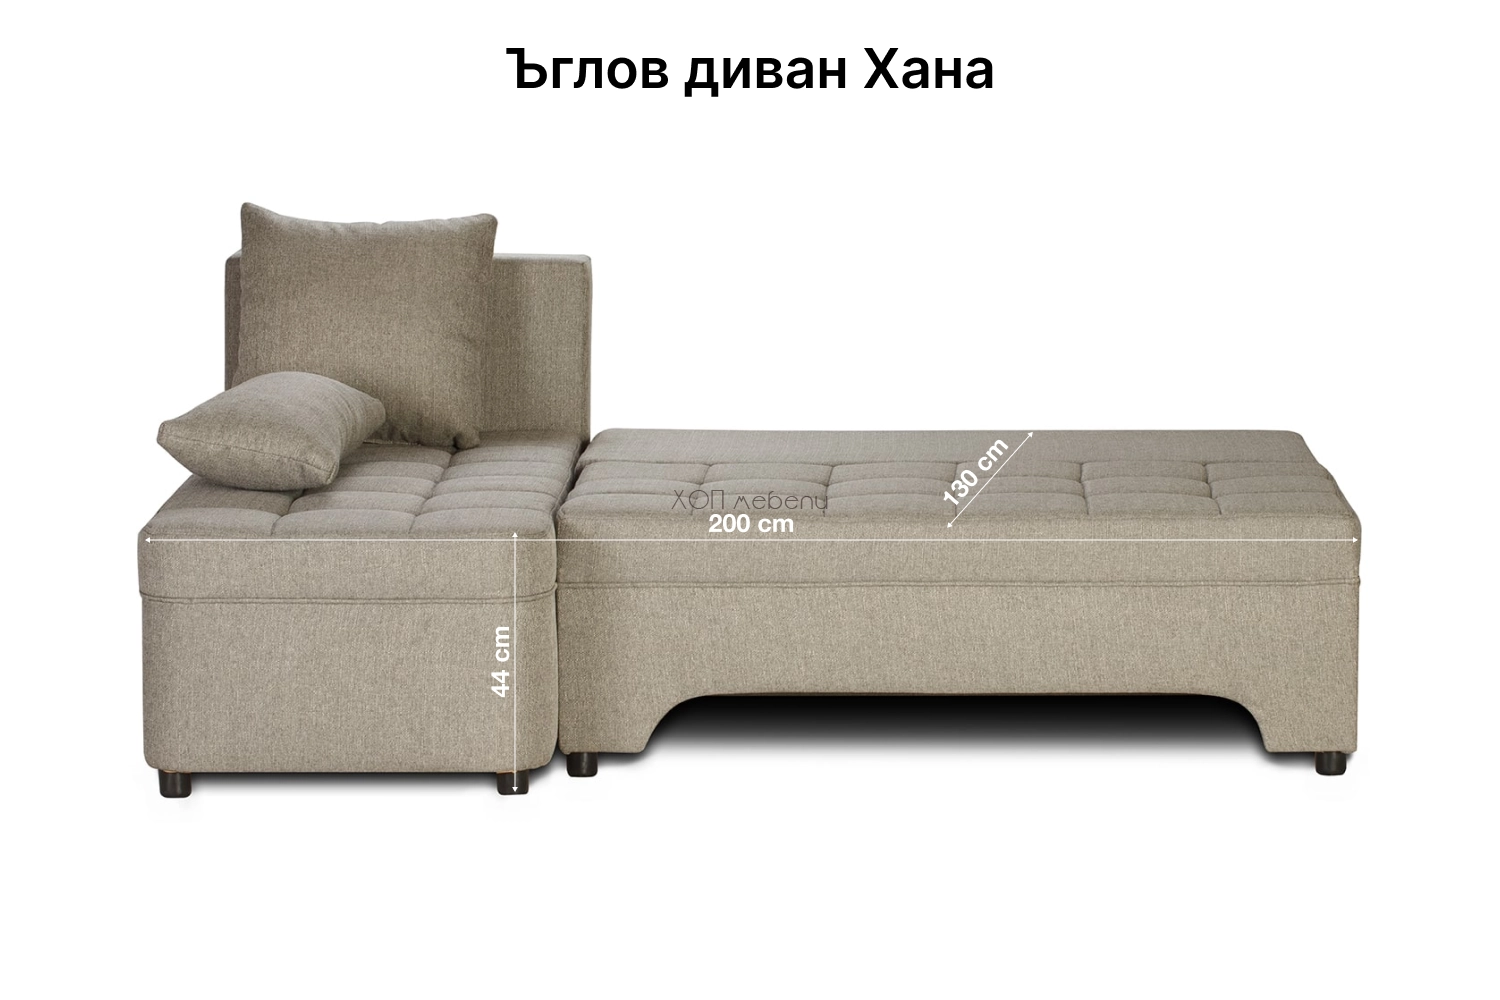 Размери на Ъглов диван Хана ID 4232 - 2